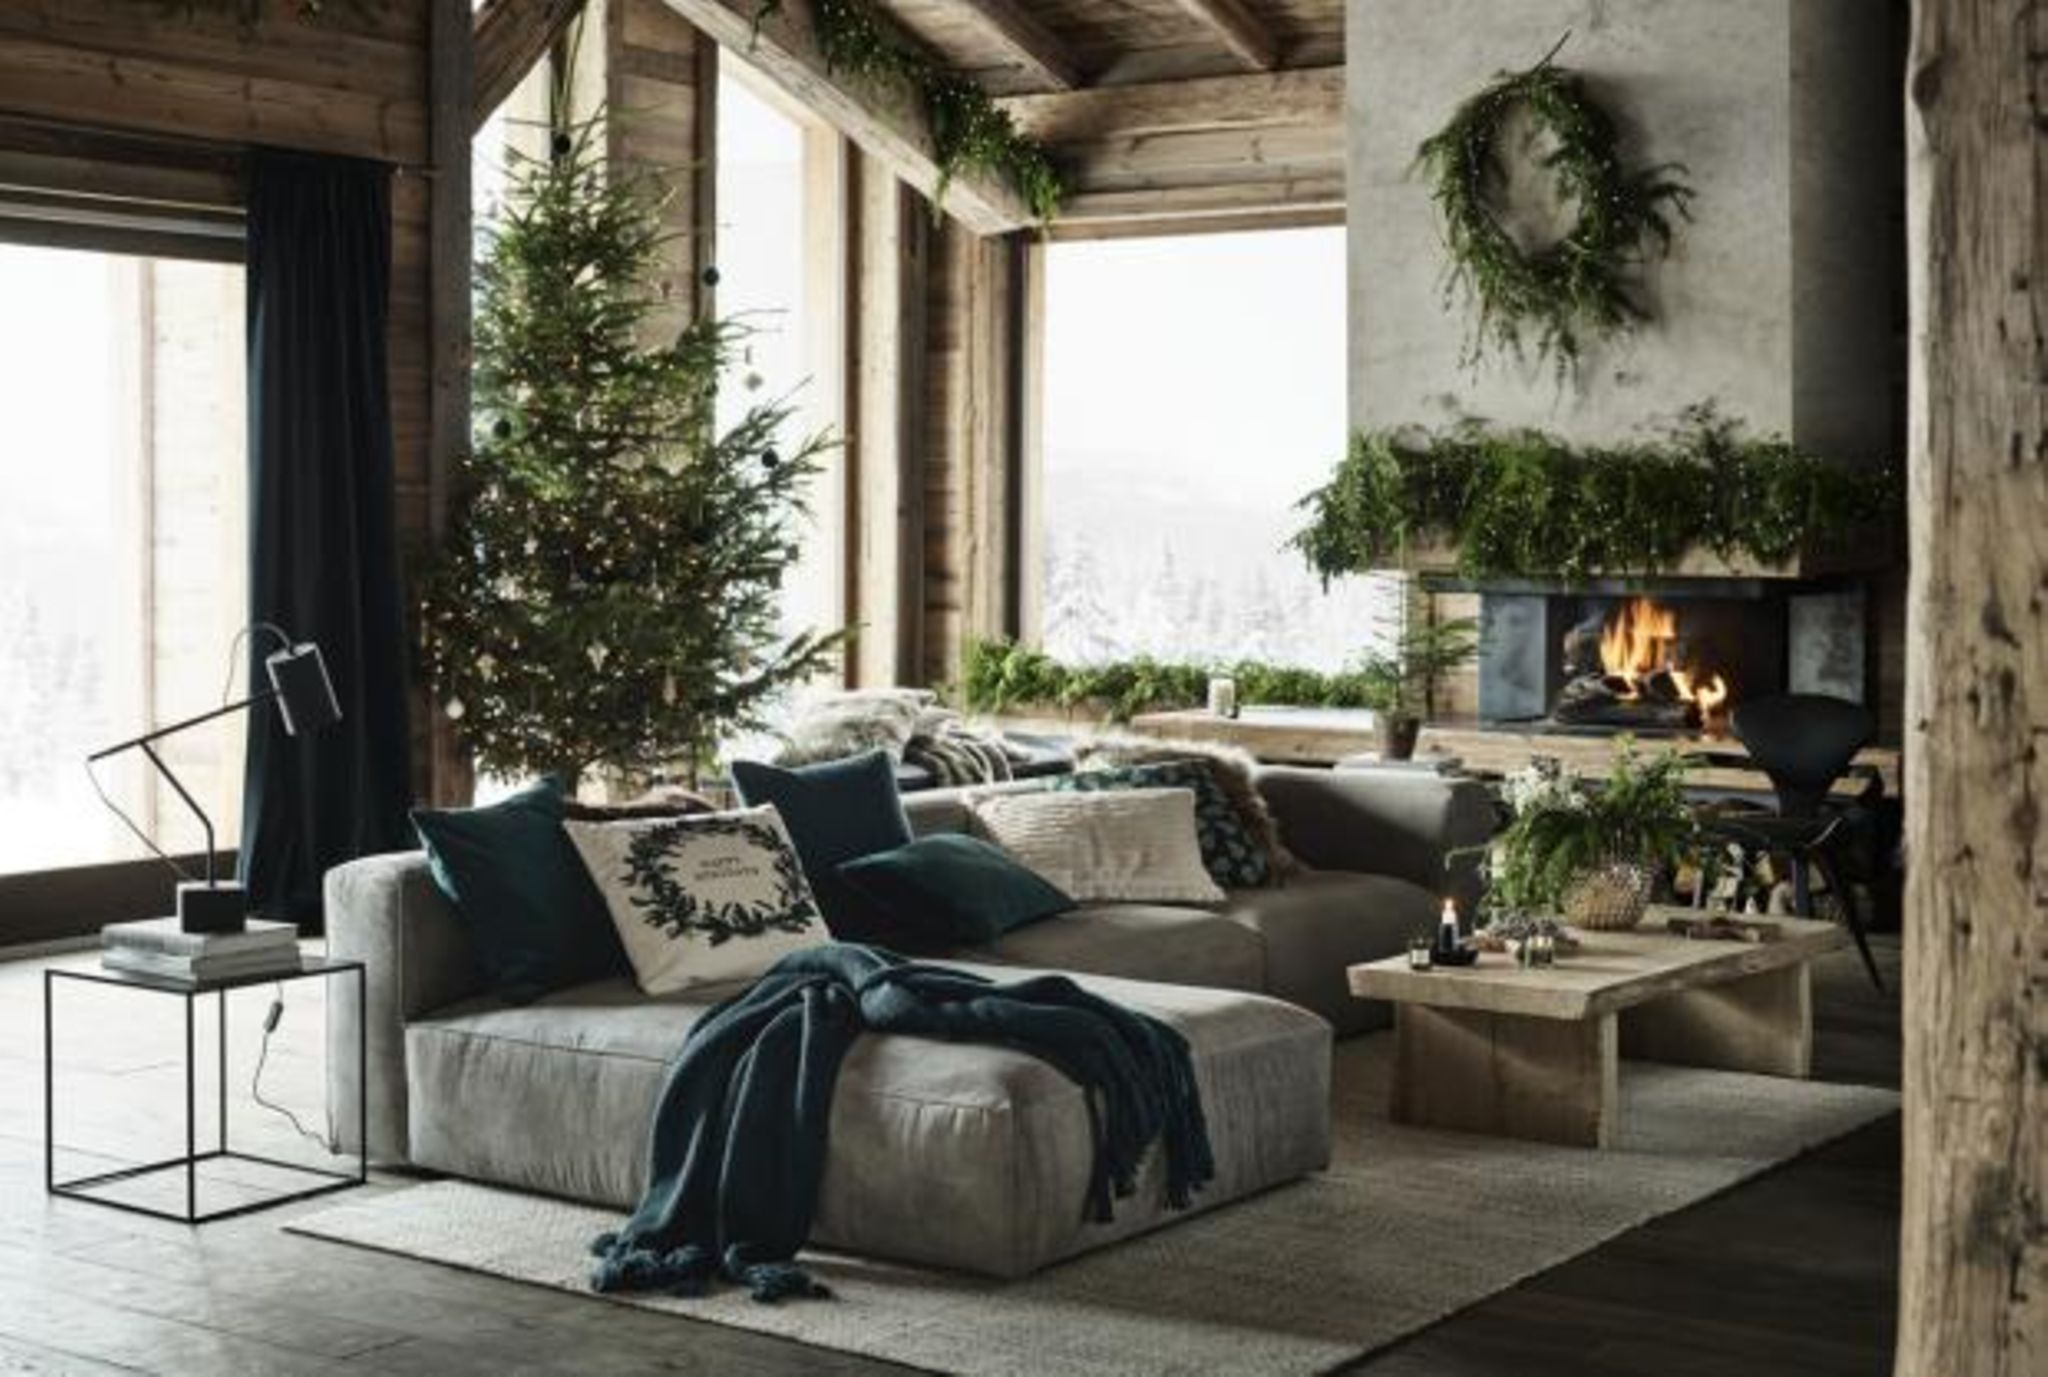 weihnachten im chalet-stil - festliche deko mit alpen-charme